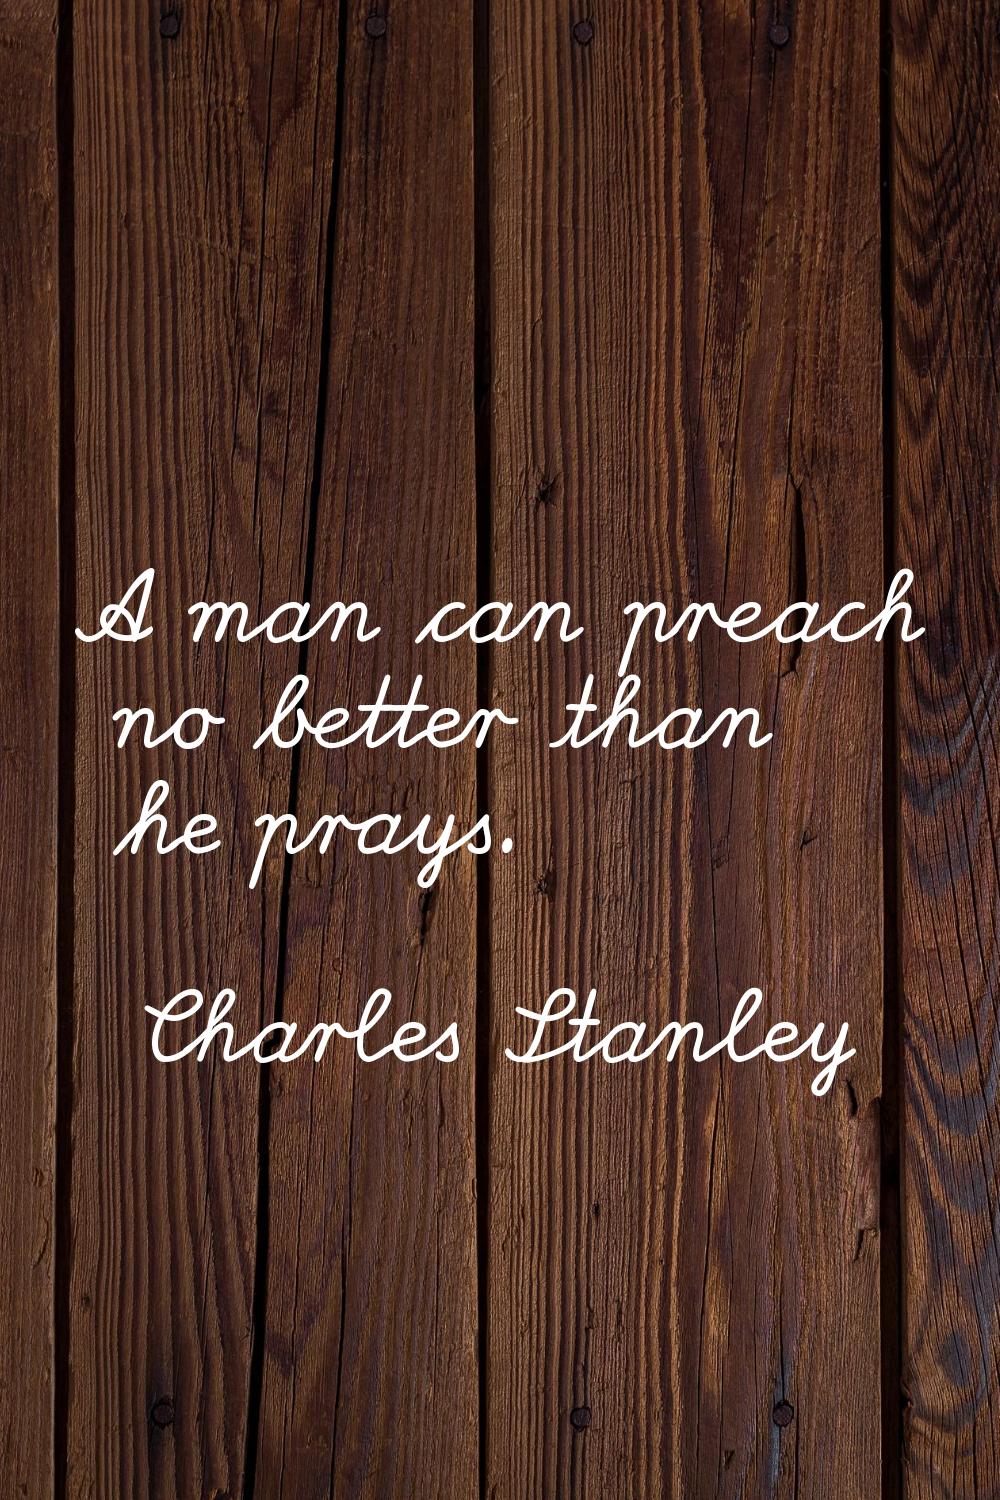 A man can preach no better than he prays.